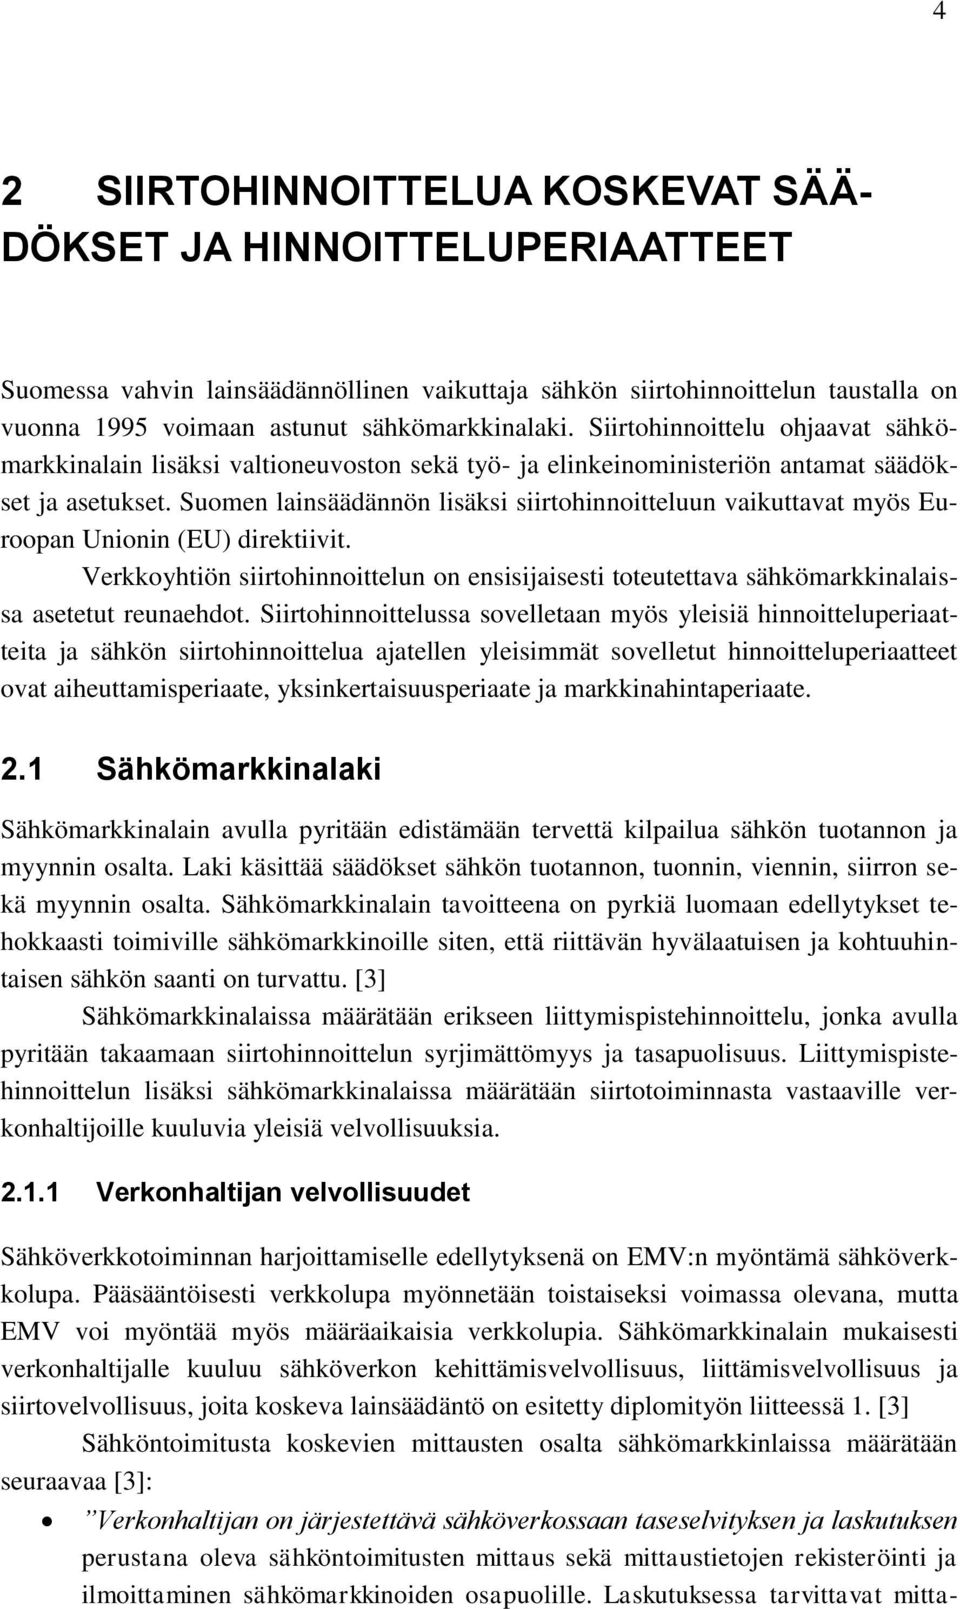 Suomen lainsäädännön lisäksi siirtohinnoitteluun vaikuttavat myös Euroopan Unionin (EU) direktiivit.